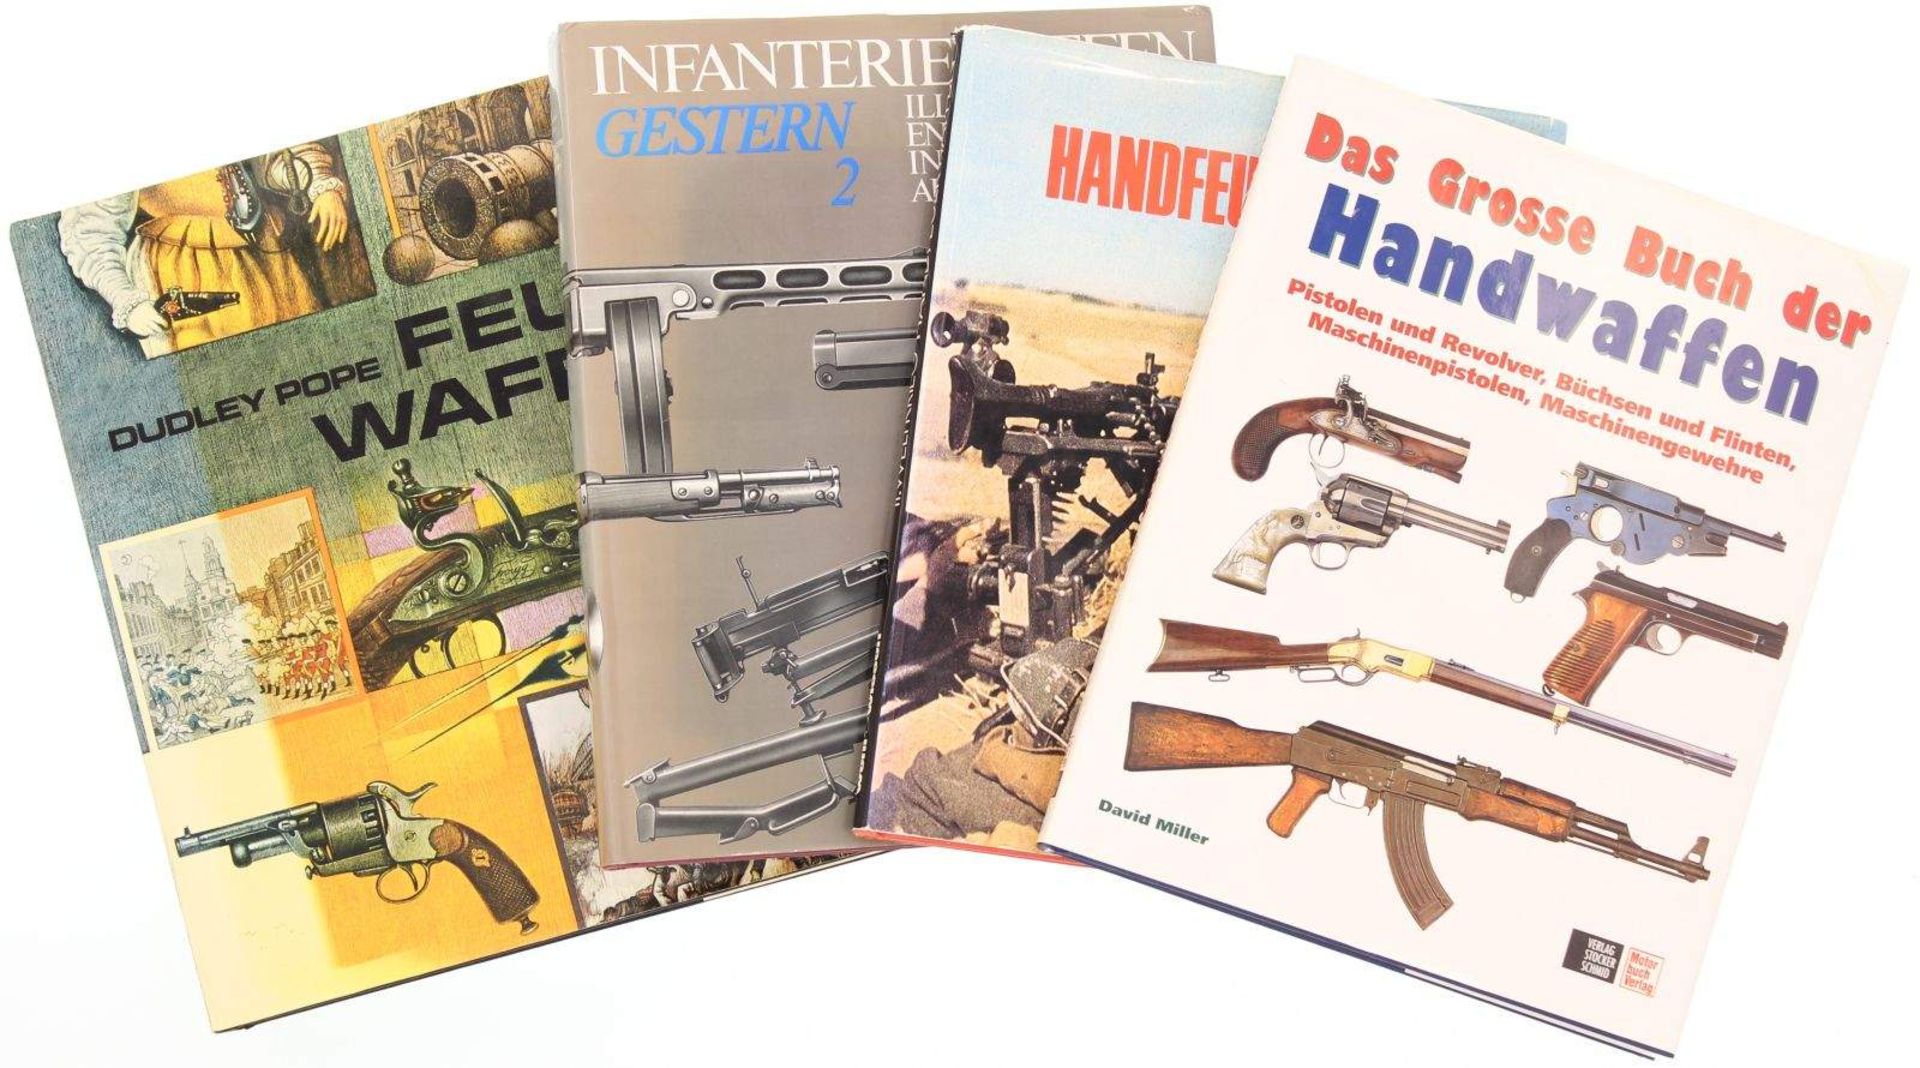 Konvolut von 4 Bildbänden. 1. Das grosse Buch der Handwaffen von David Miller, 2. Feuerwaffen von